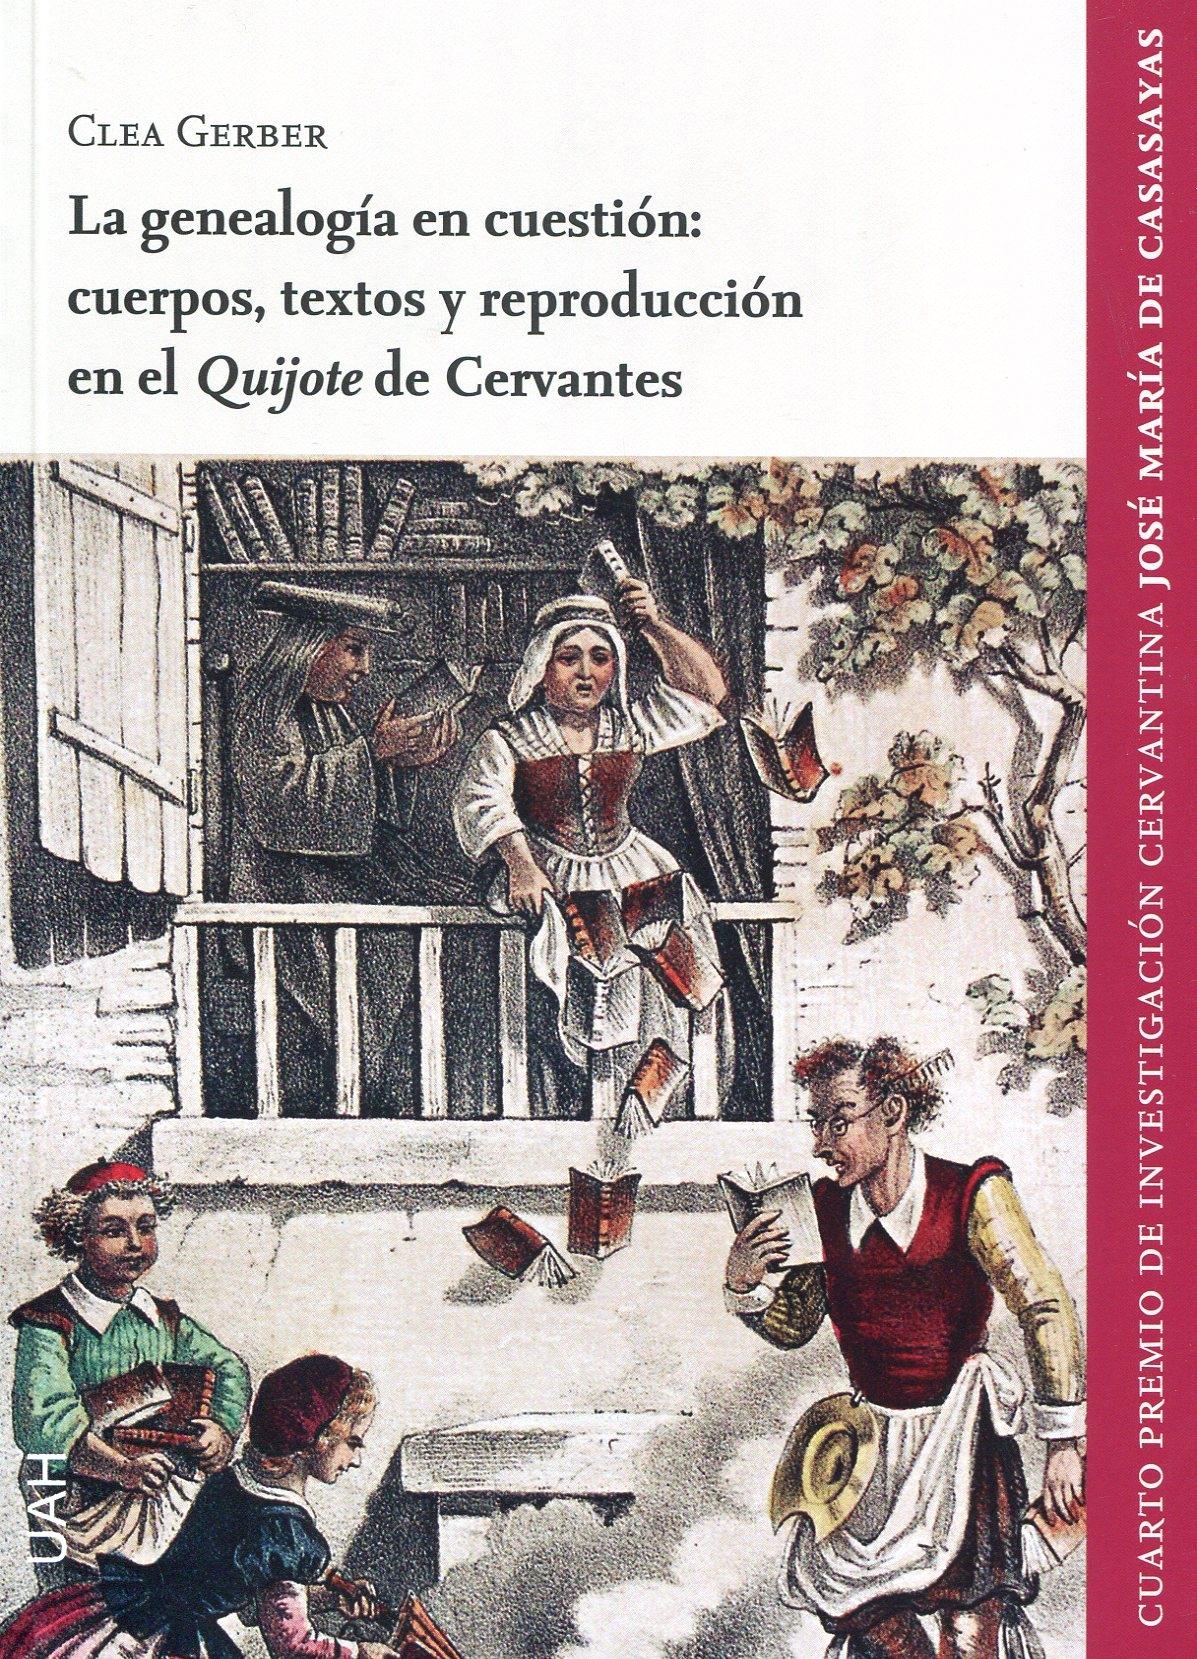 La genealogía en cuestión "Cuerpos, textos y reproducción en el 'Quijote' de Cervantes"